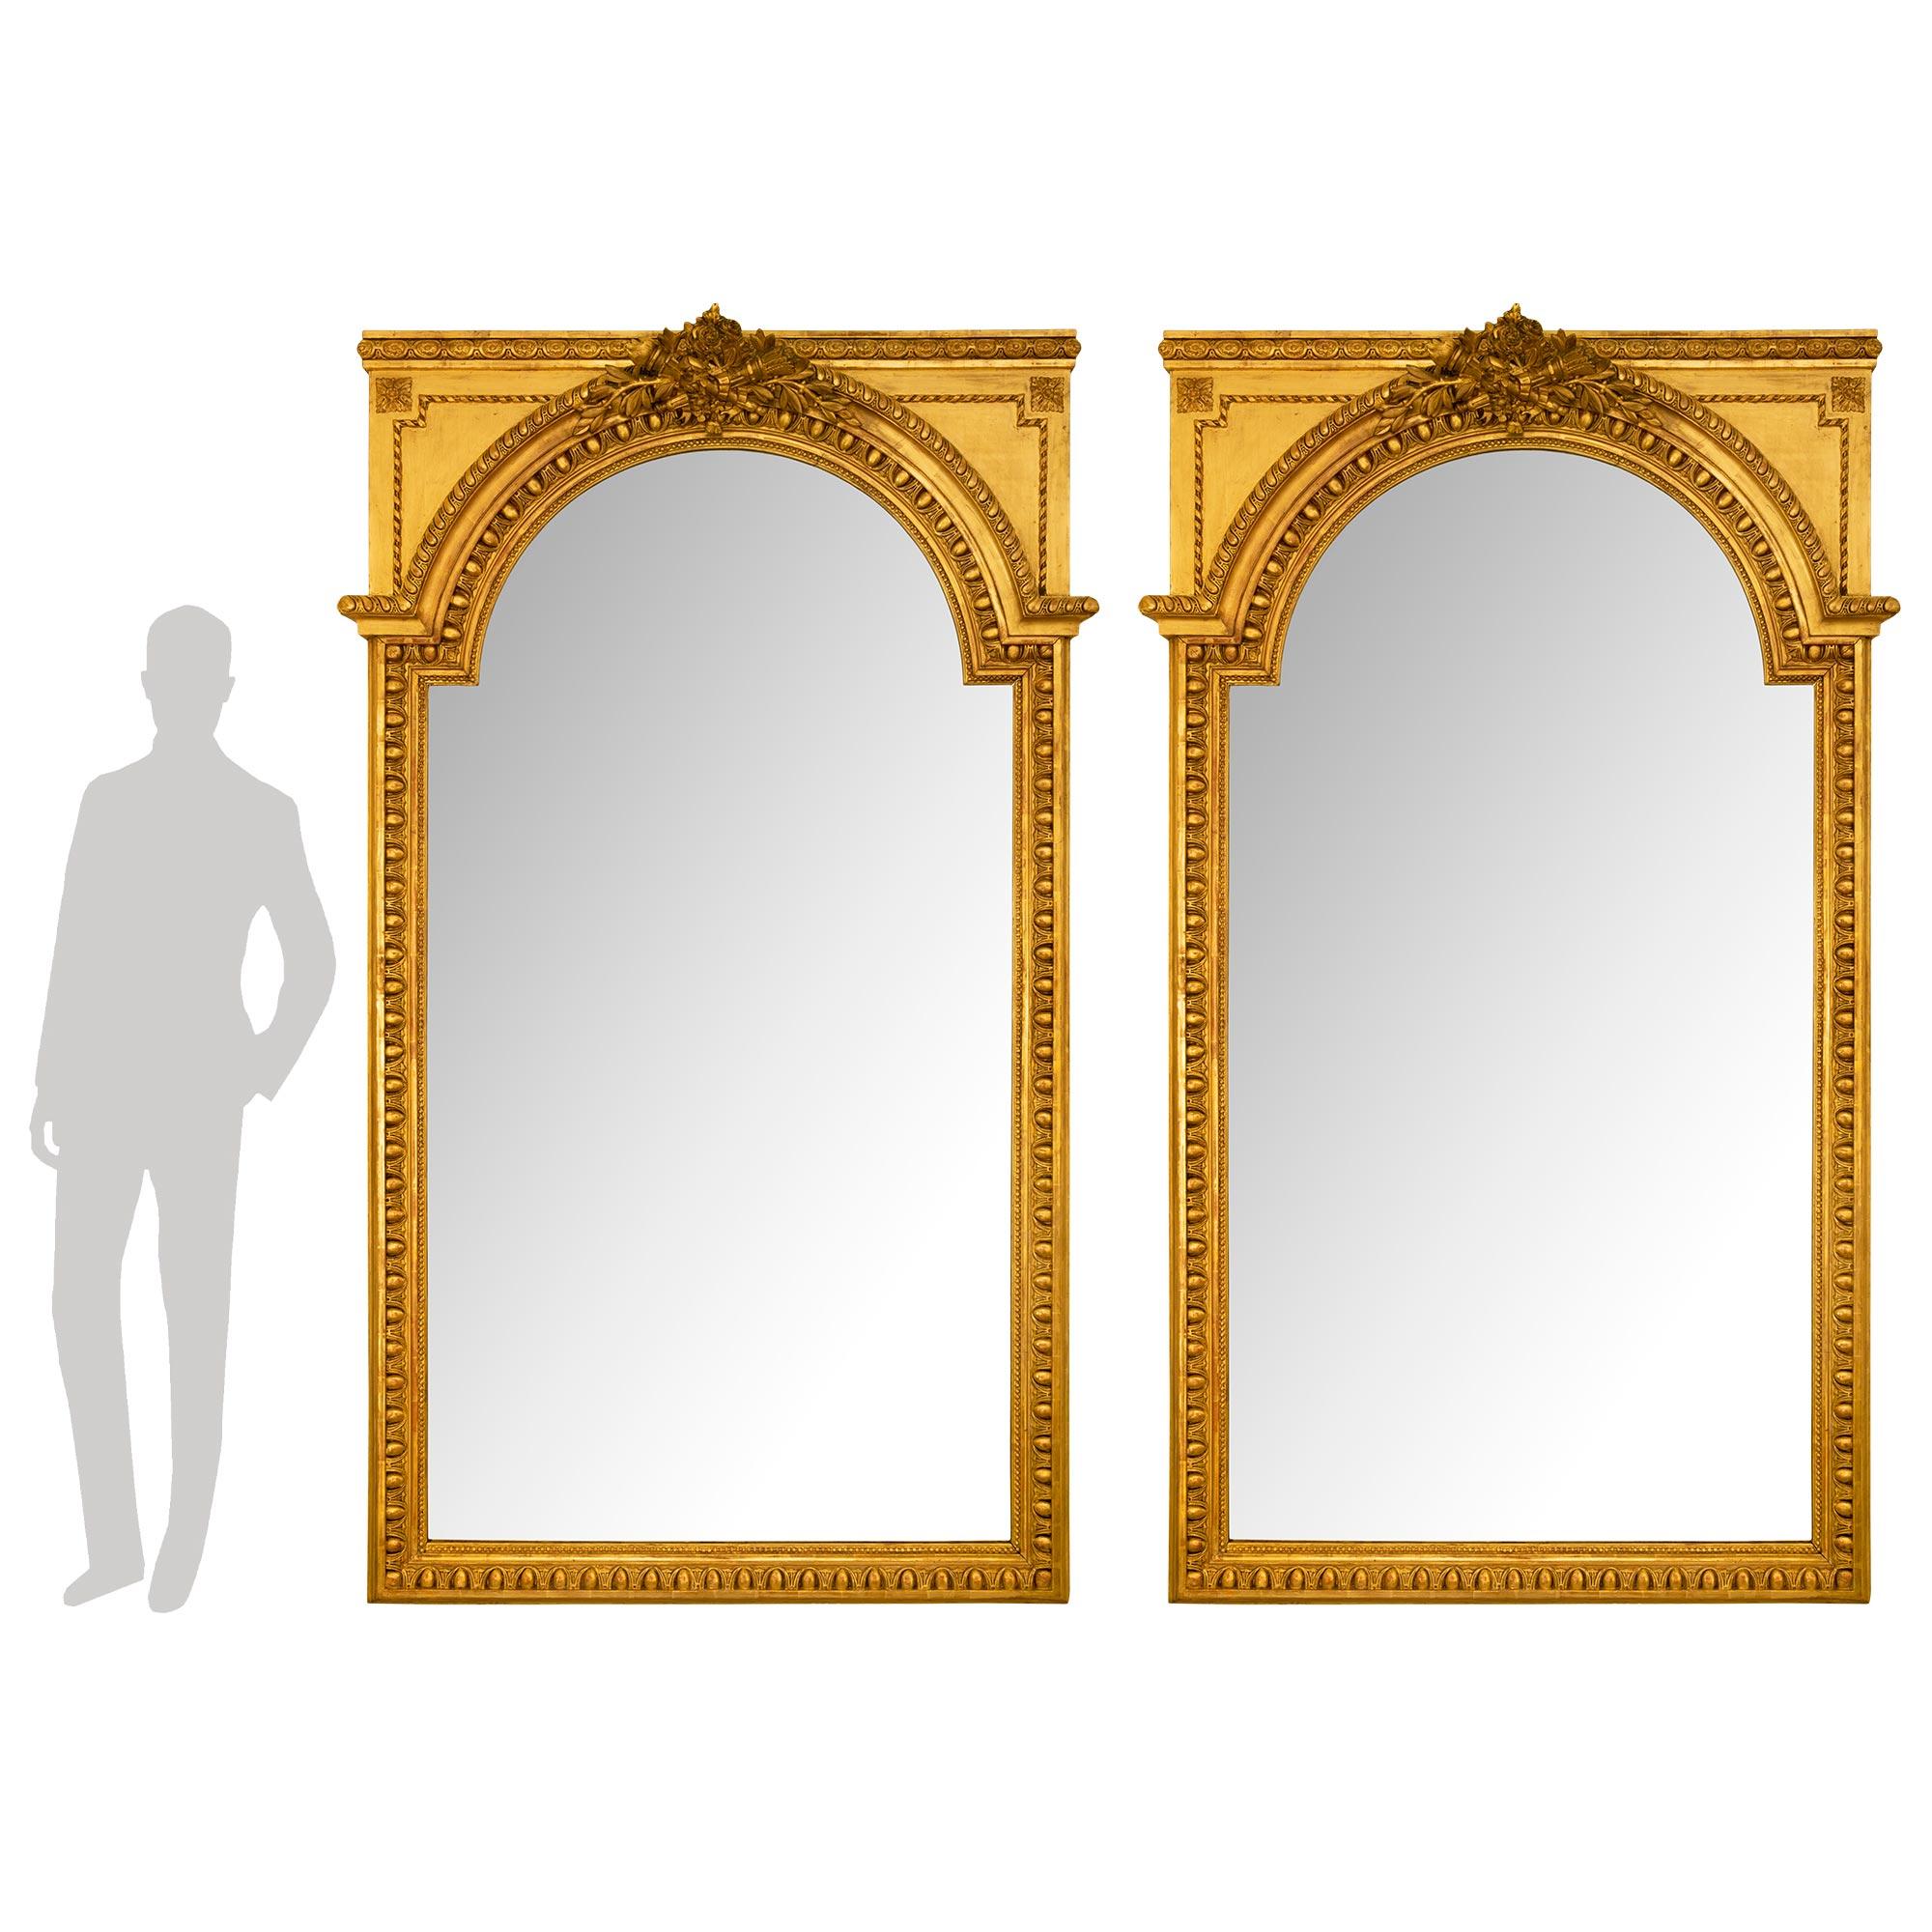 Superbe paire de miroirs en bois doré de style Louis XVI, datant du milieu du XIXe siècle. Chaque miroir conserve sa plaque d'origine encadrée d'une élégante bordure perlée chinée. Le cadre présente un exceptionnel et très décoratif motif d'œuf et